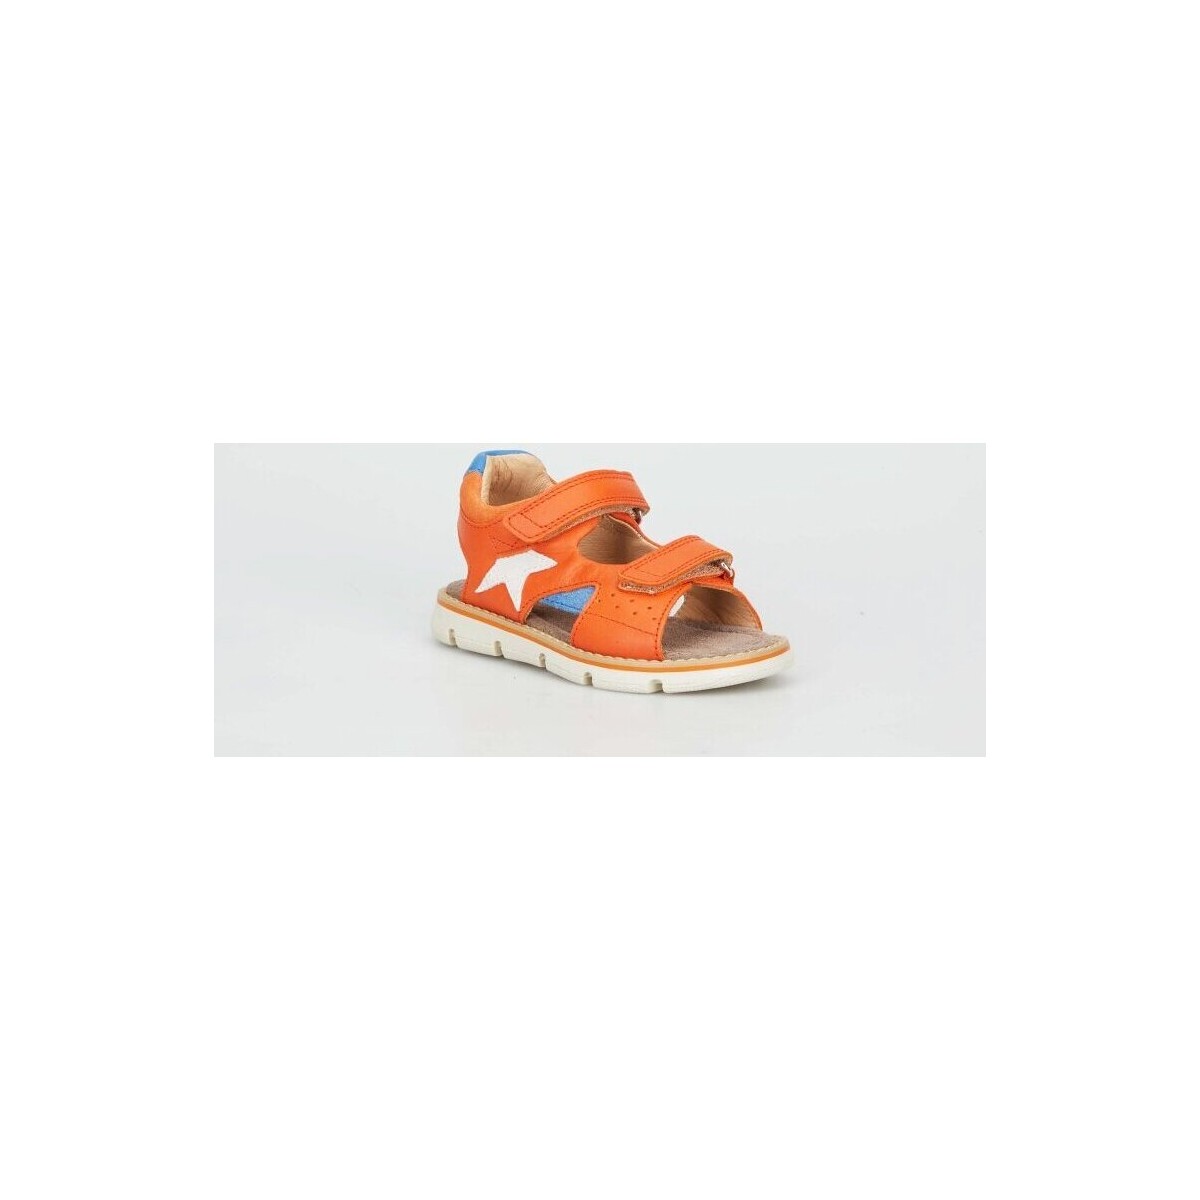 Chaussures Garçon se mesure à partir du haut de lintérieur de la cuisse jusquau bas des pieds Ernesto Orange Orange